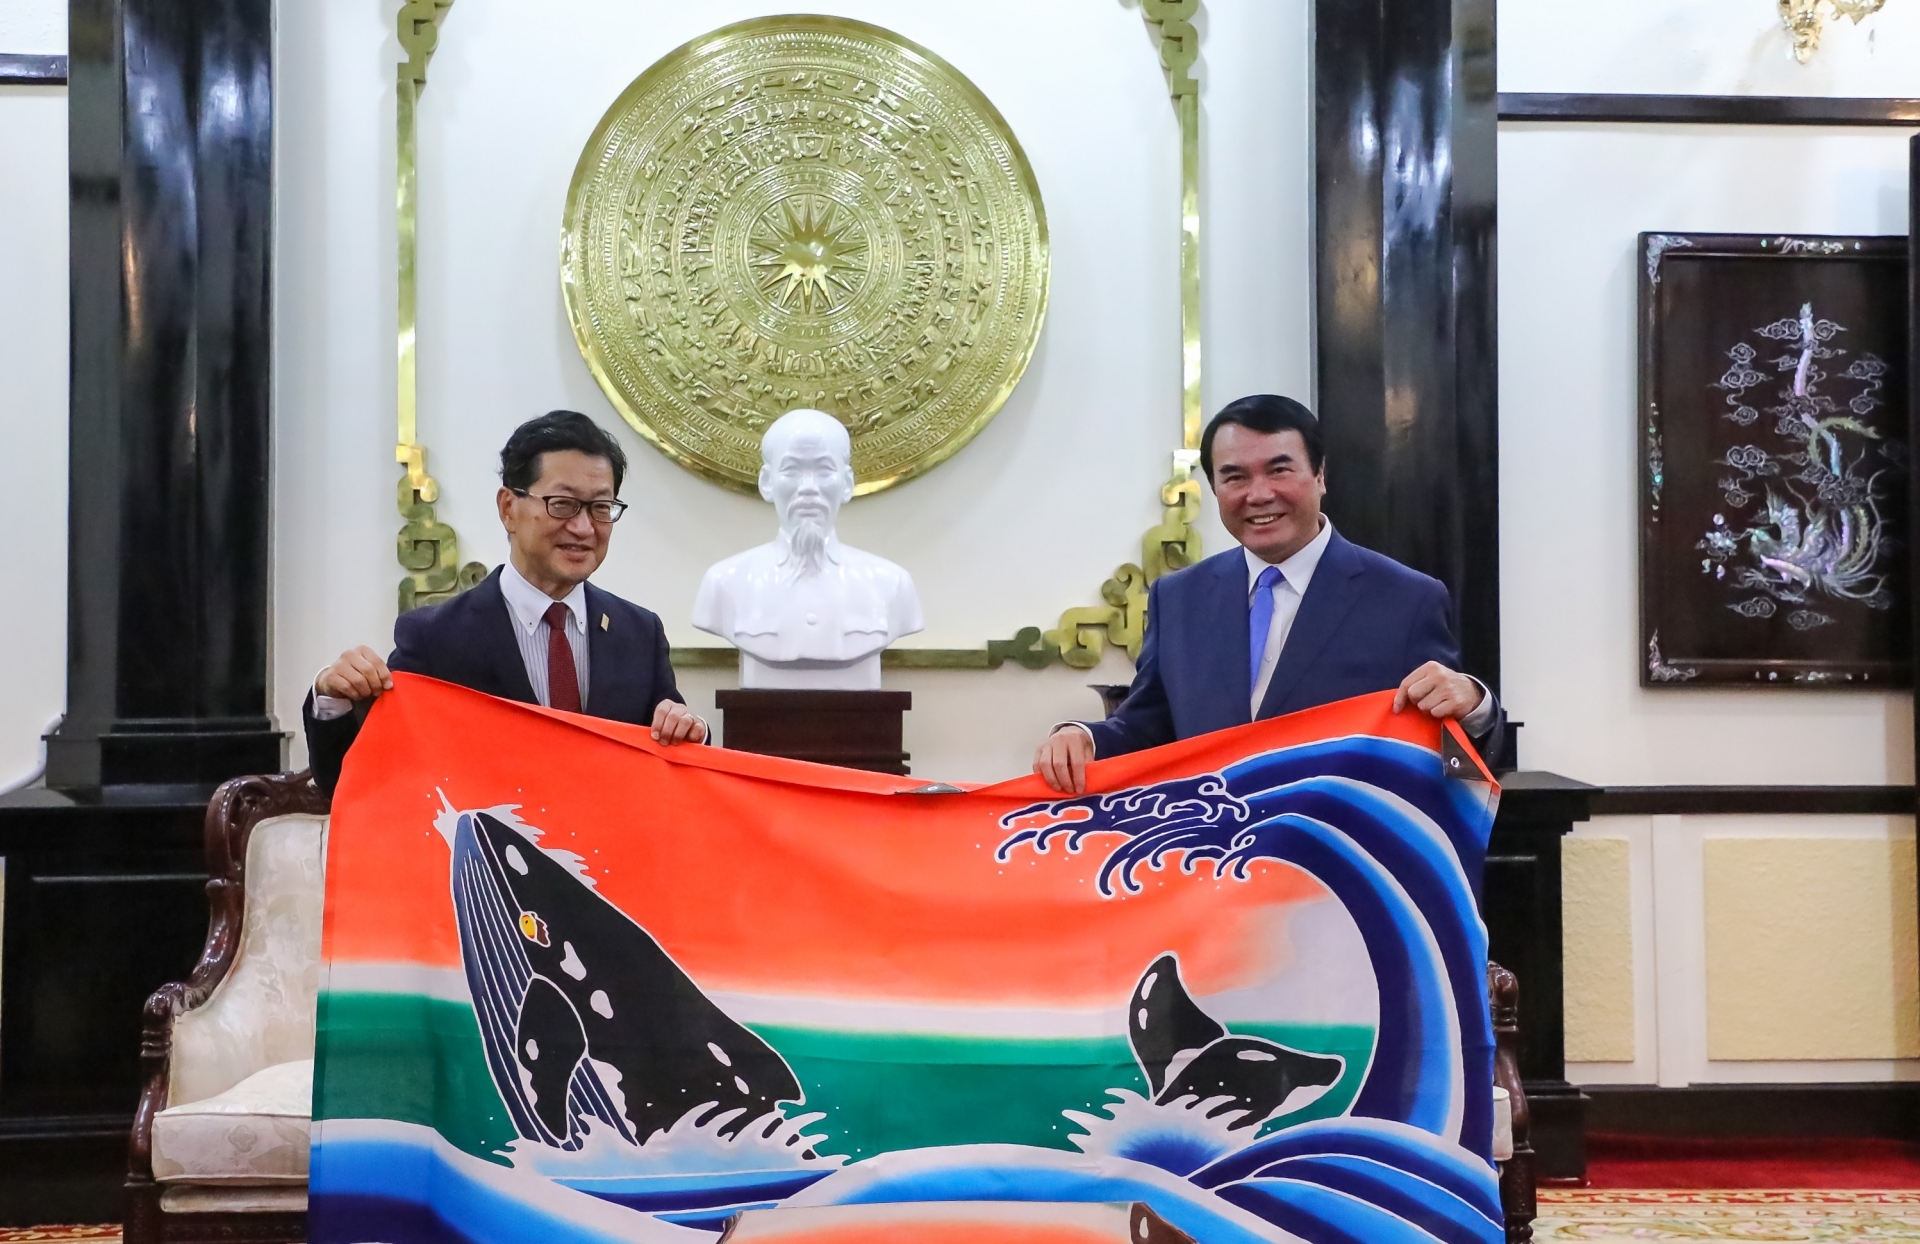 Thống đốc tỉnh Kochi tầng lá cờ hình ơn Voi - biểu tượng của Tỉnh ông